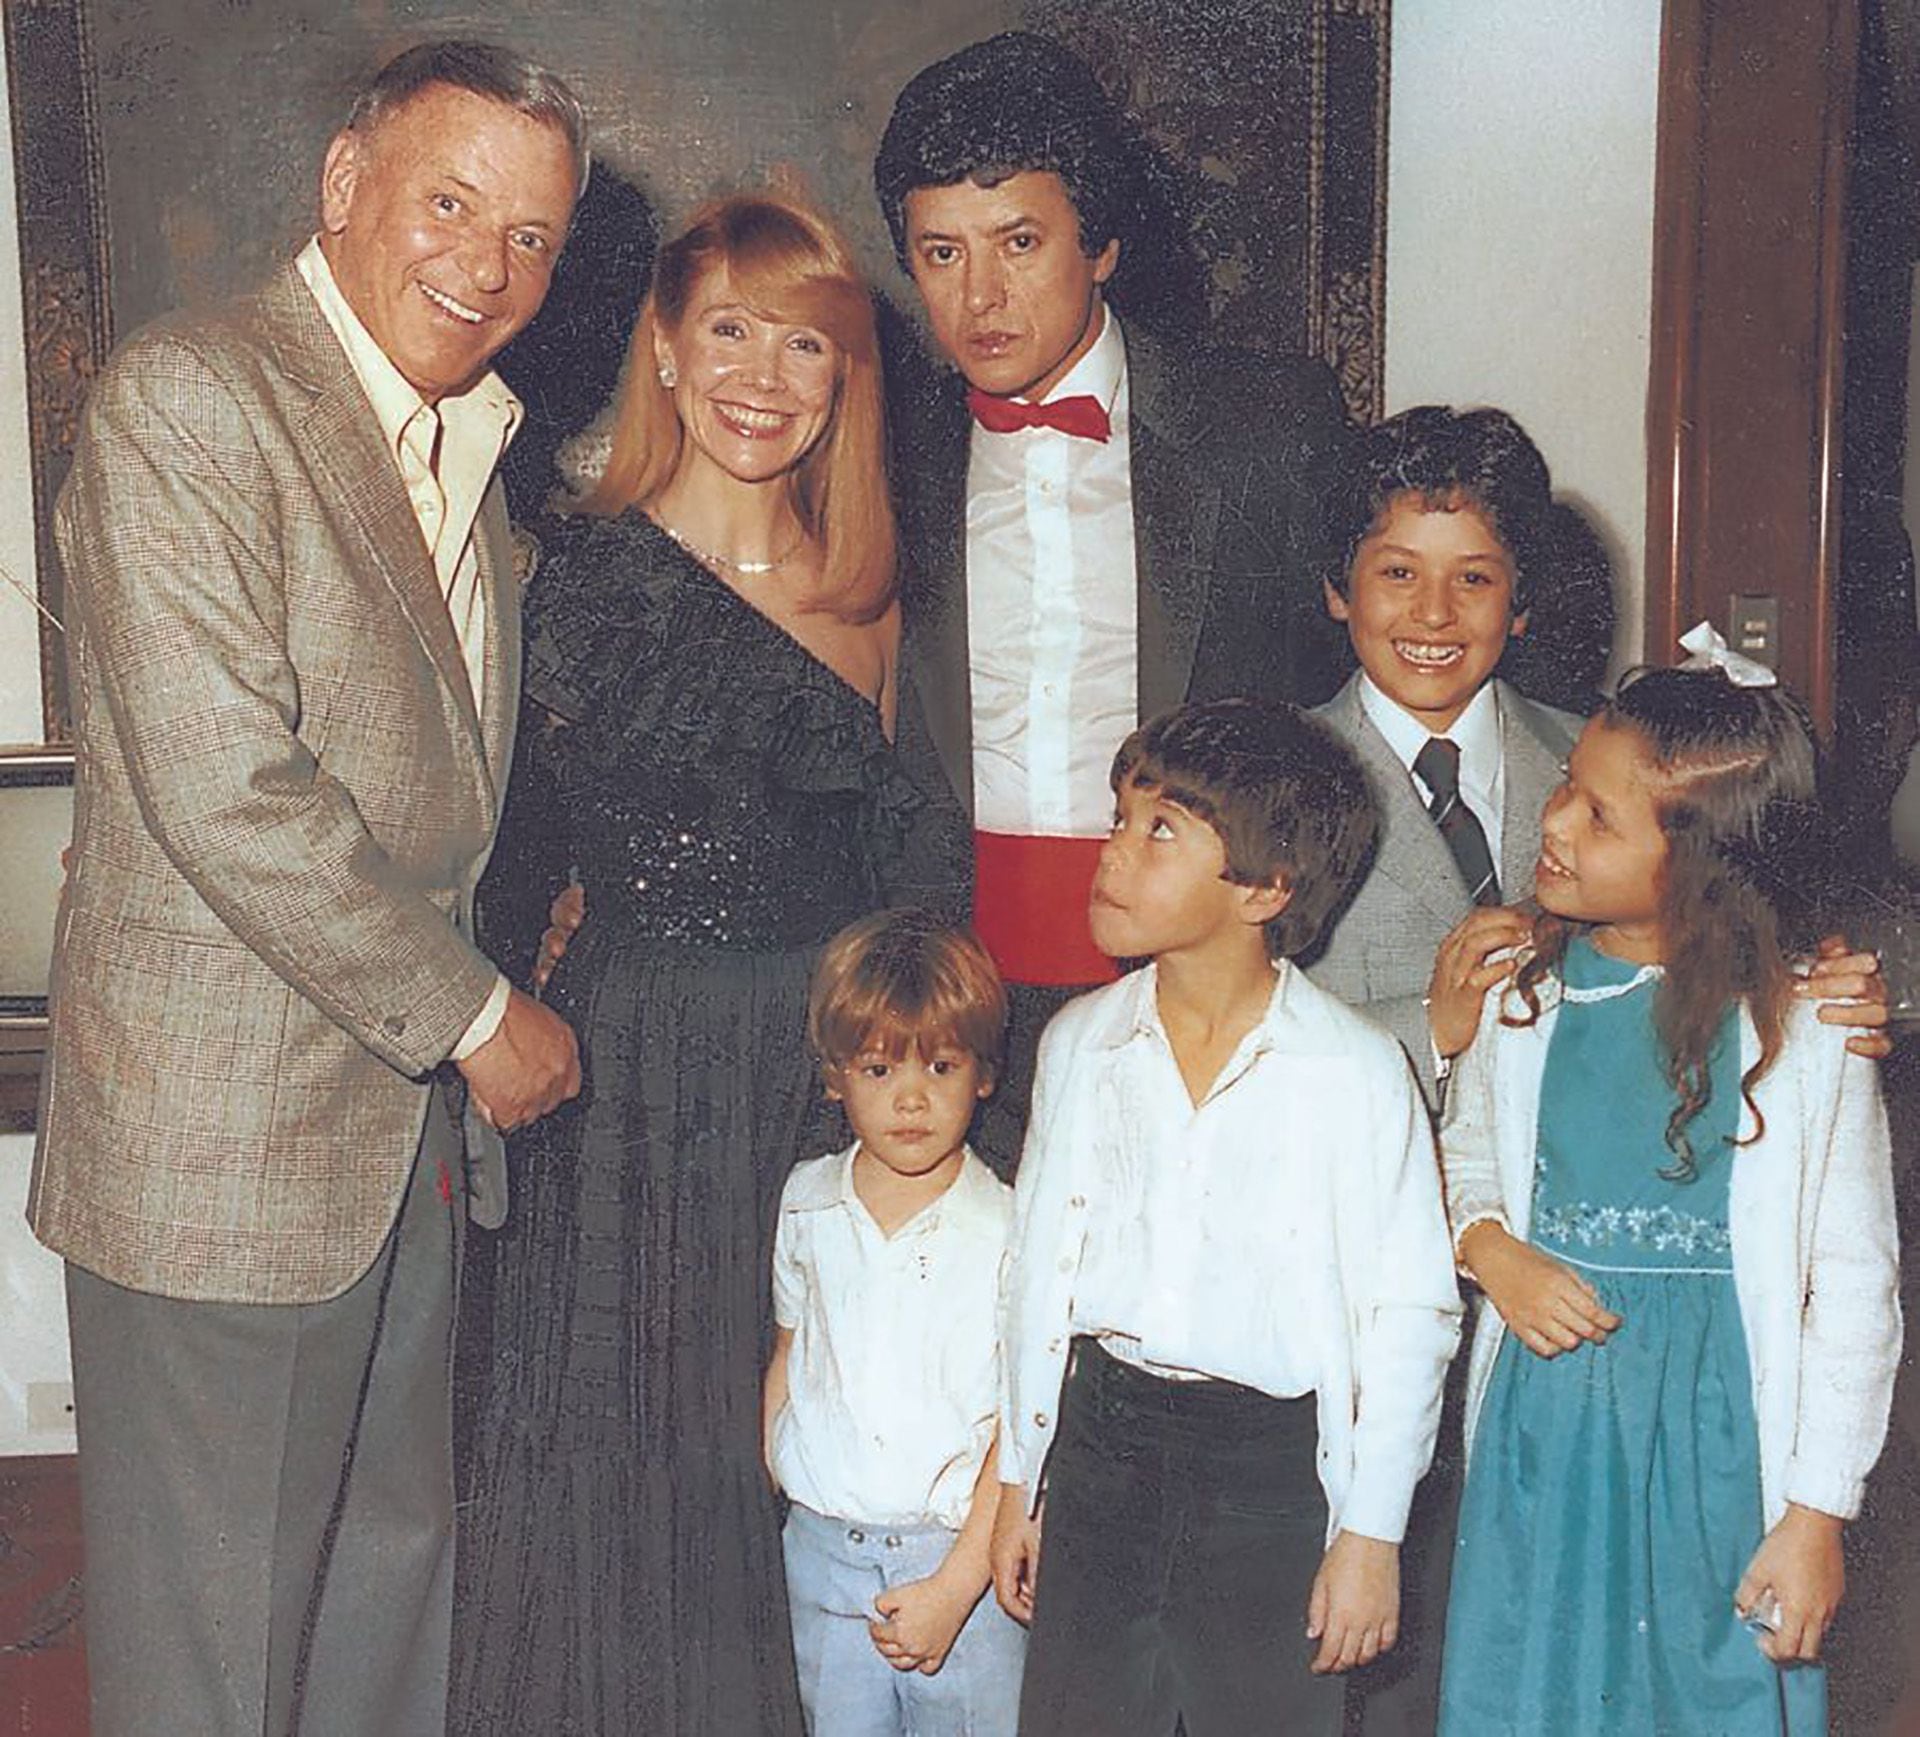 Ramón Ortega, Evangelina Salazar y sus hijos, Martín, Julieta, Sebastián, Emanuel y Luis en el show que Frank Sinatra dio en Buenos Aires, en 1981, producido por Palito